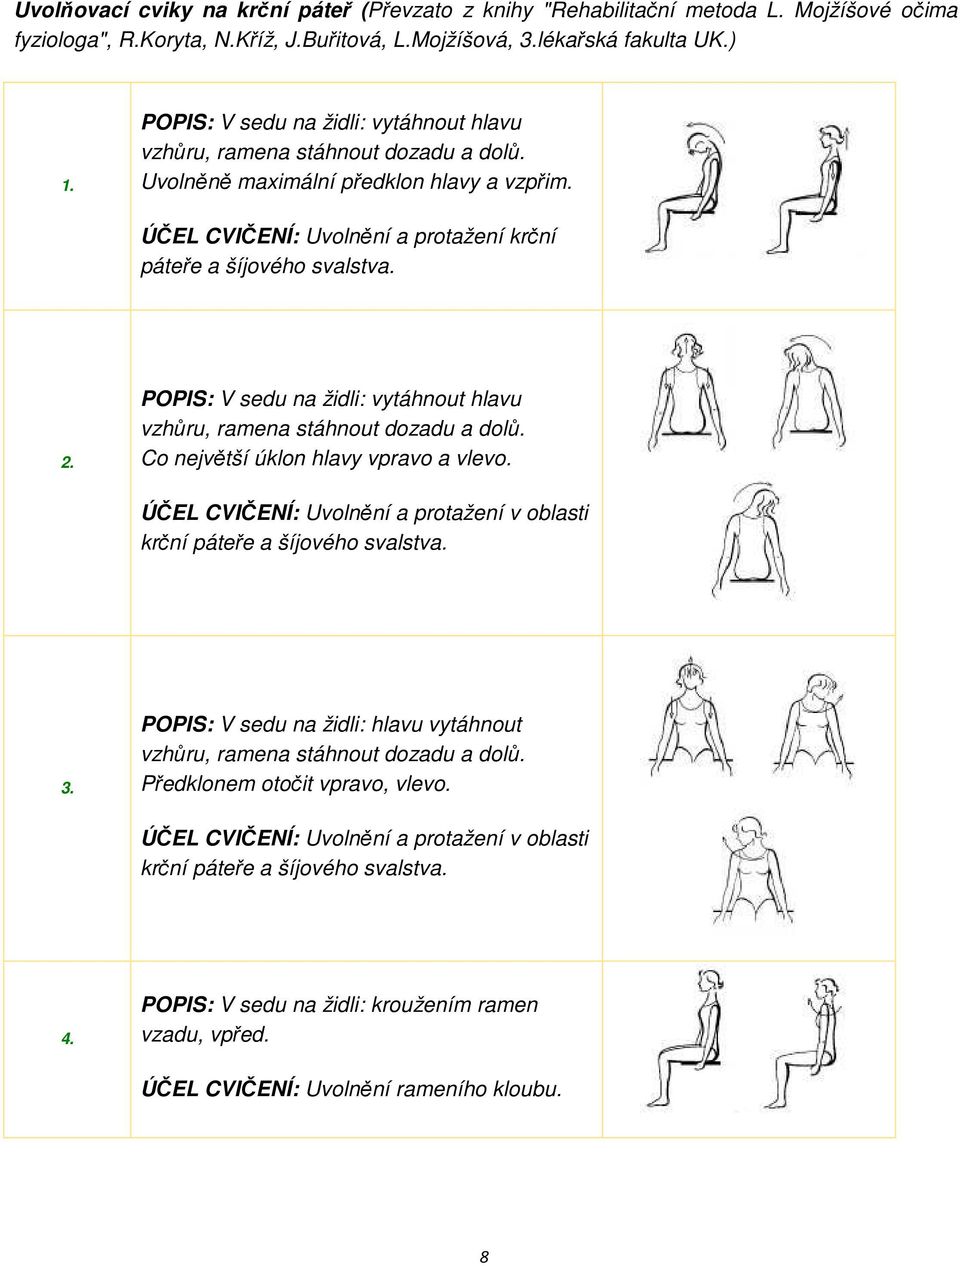 POPIS: V sedu na židli: vytáhnout hlavu vzhůru, ramena stáhnout dozadu a dolů. Co největší úklon hlavy vpravo a vlevo. ÚČEL CVIČENÍ: Uvolnění a protažení v oblasti krční páteře a šíjového svalstva. 3.